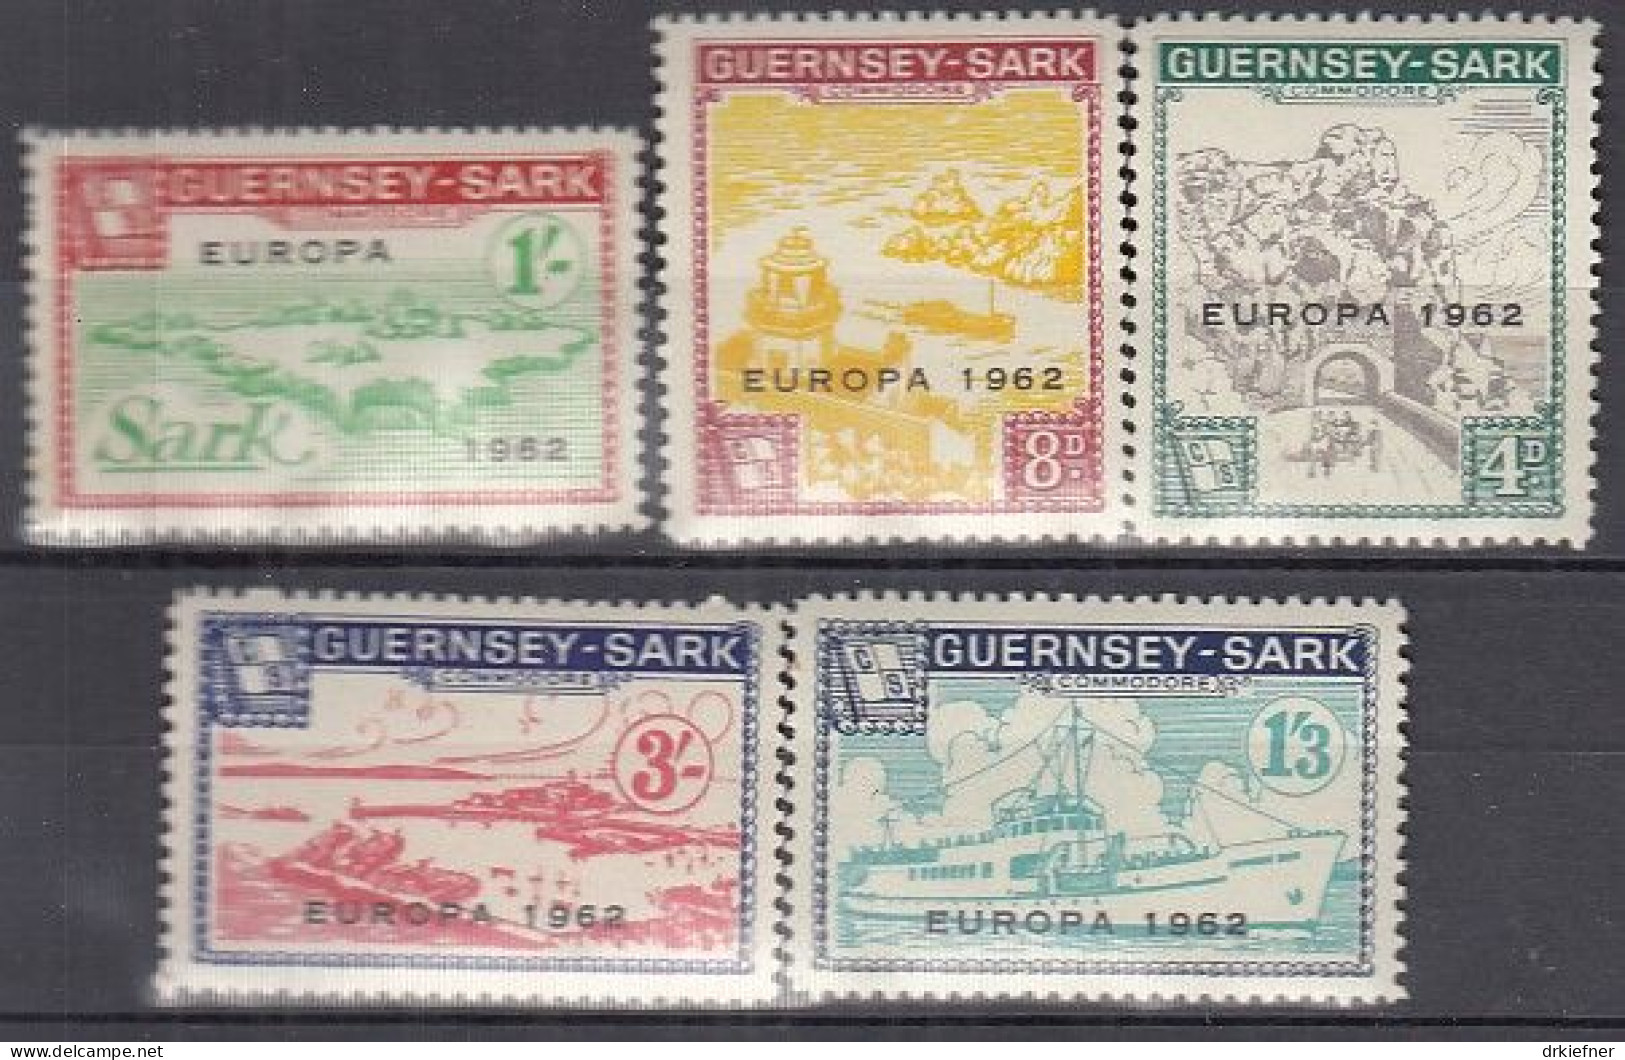 INSEL SARK (Guernsey), Nichtamtl. Briefmarken, 5 Marken, Ungebraucht **, Europa 1962, Landesmotive - Guernsey